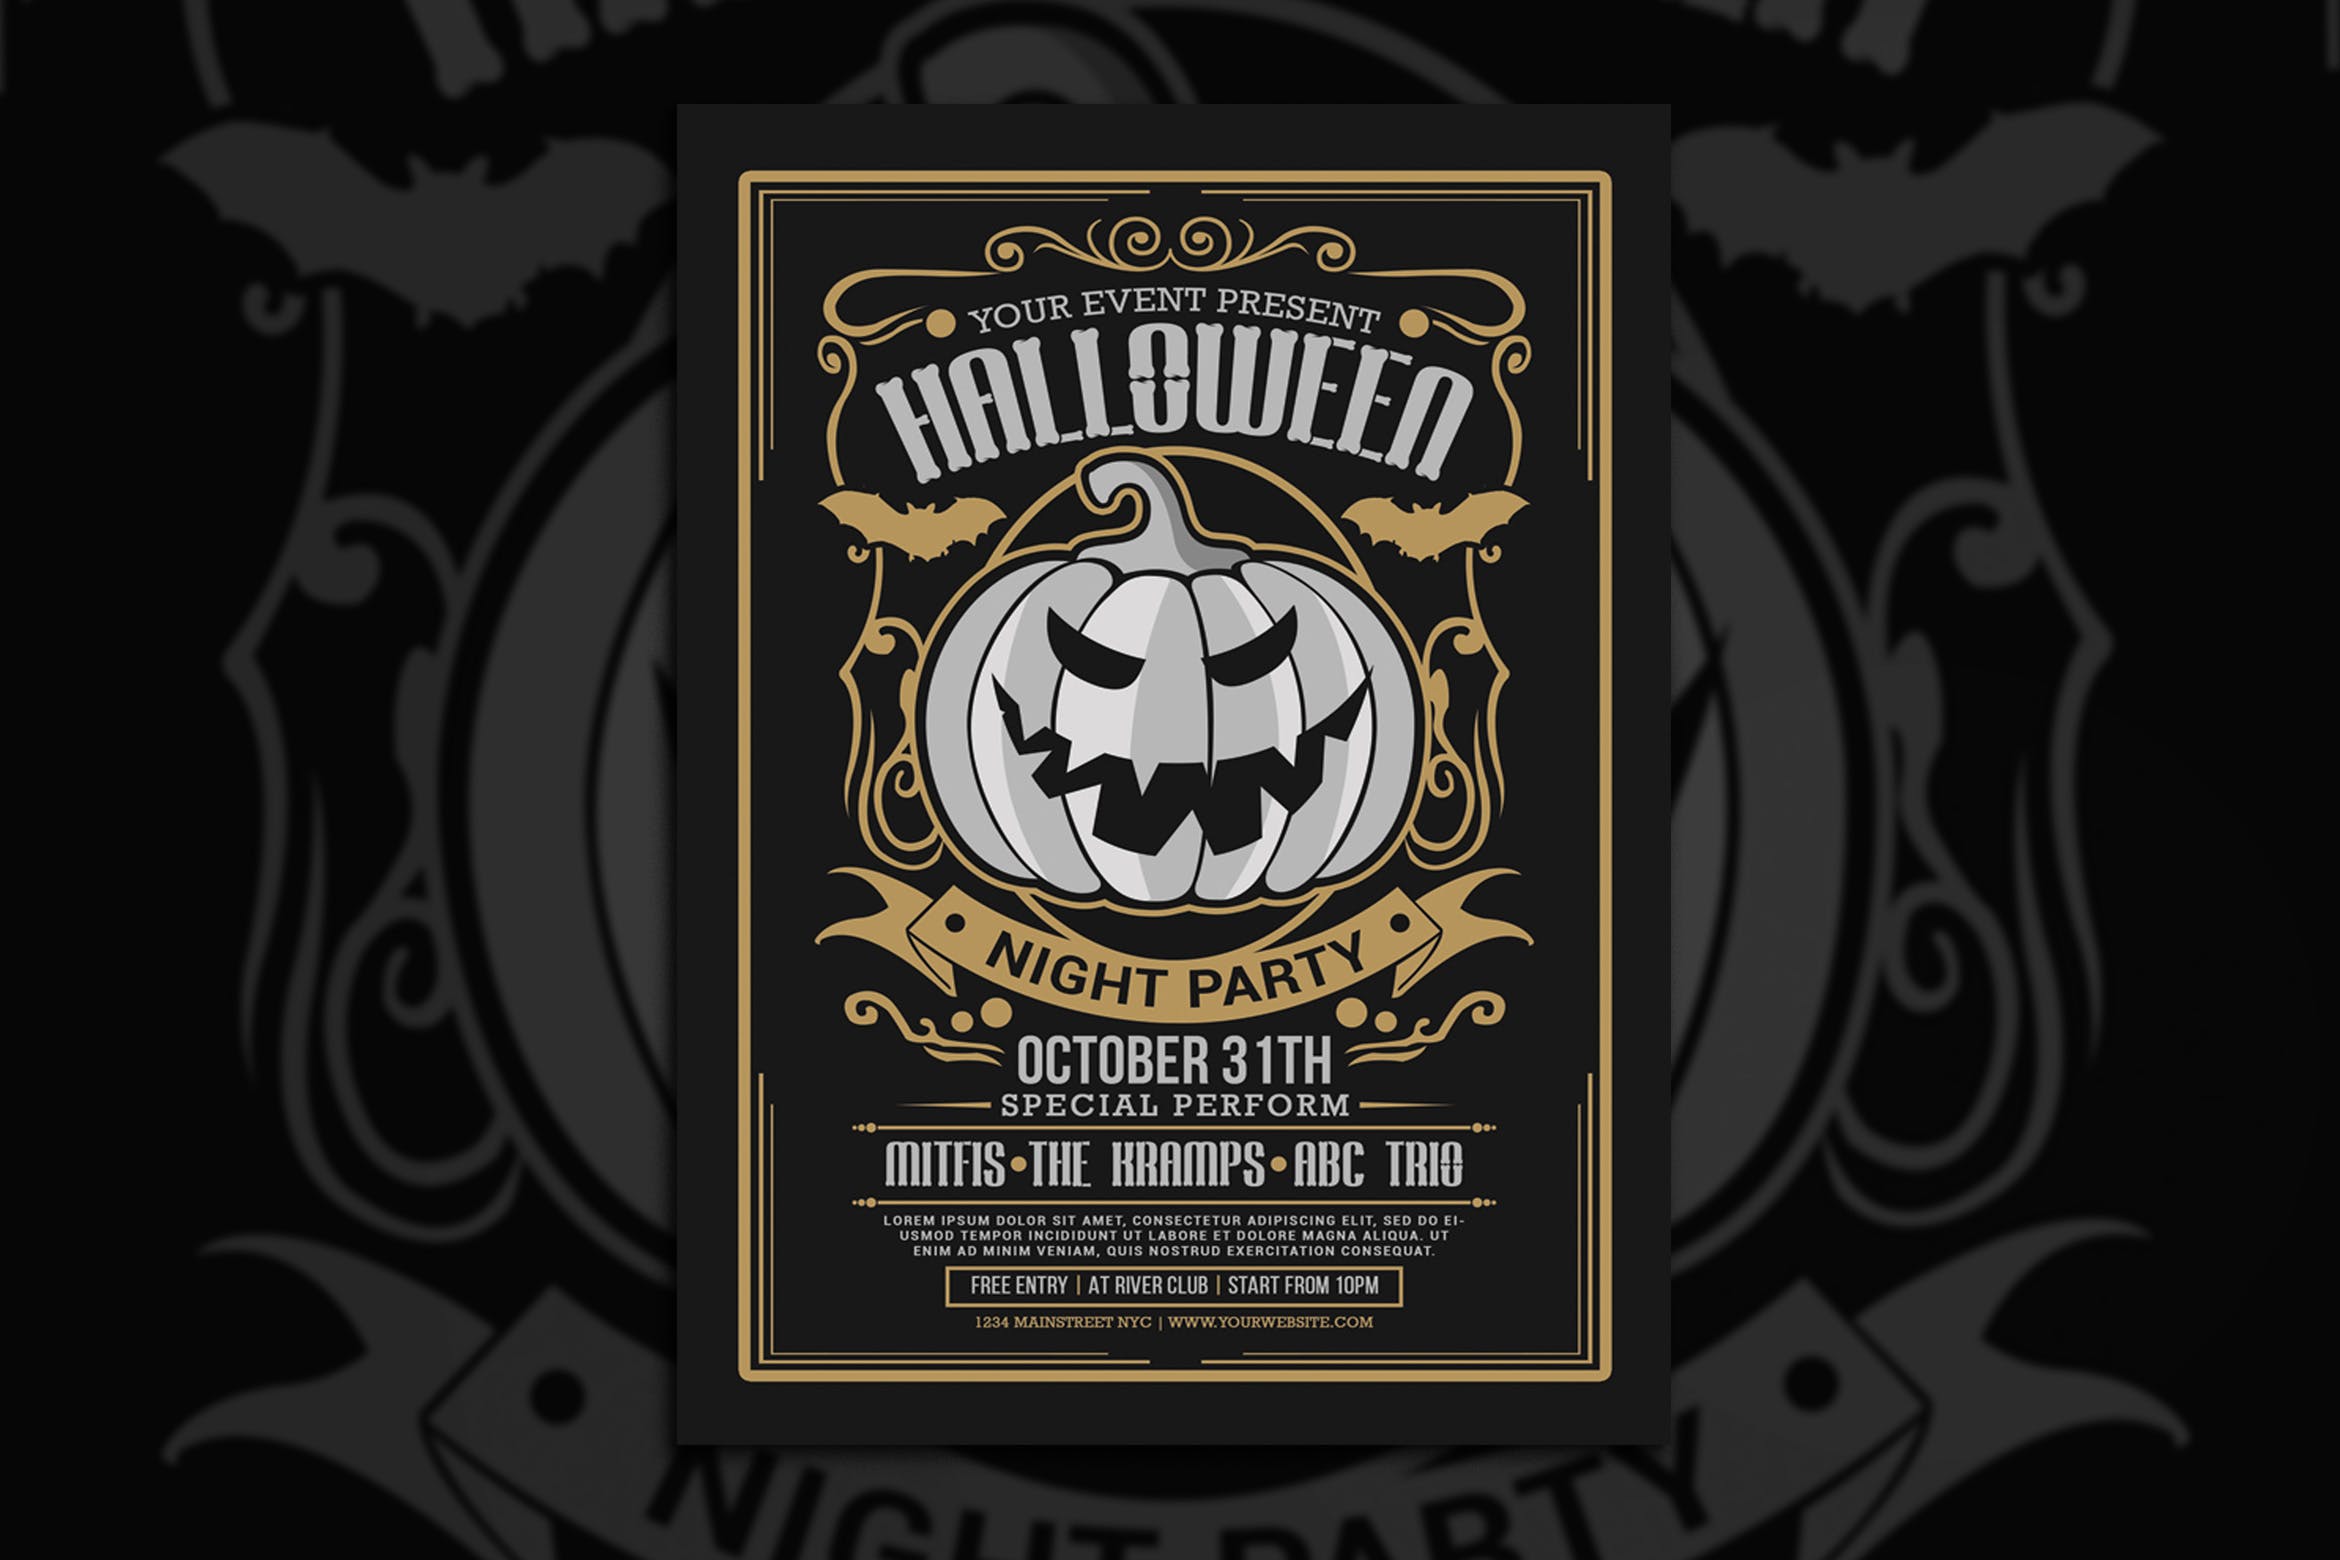 万圣节之夜主题活动海报设计模板 Halloween Nigh